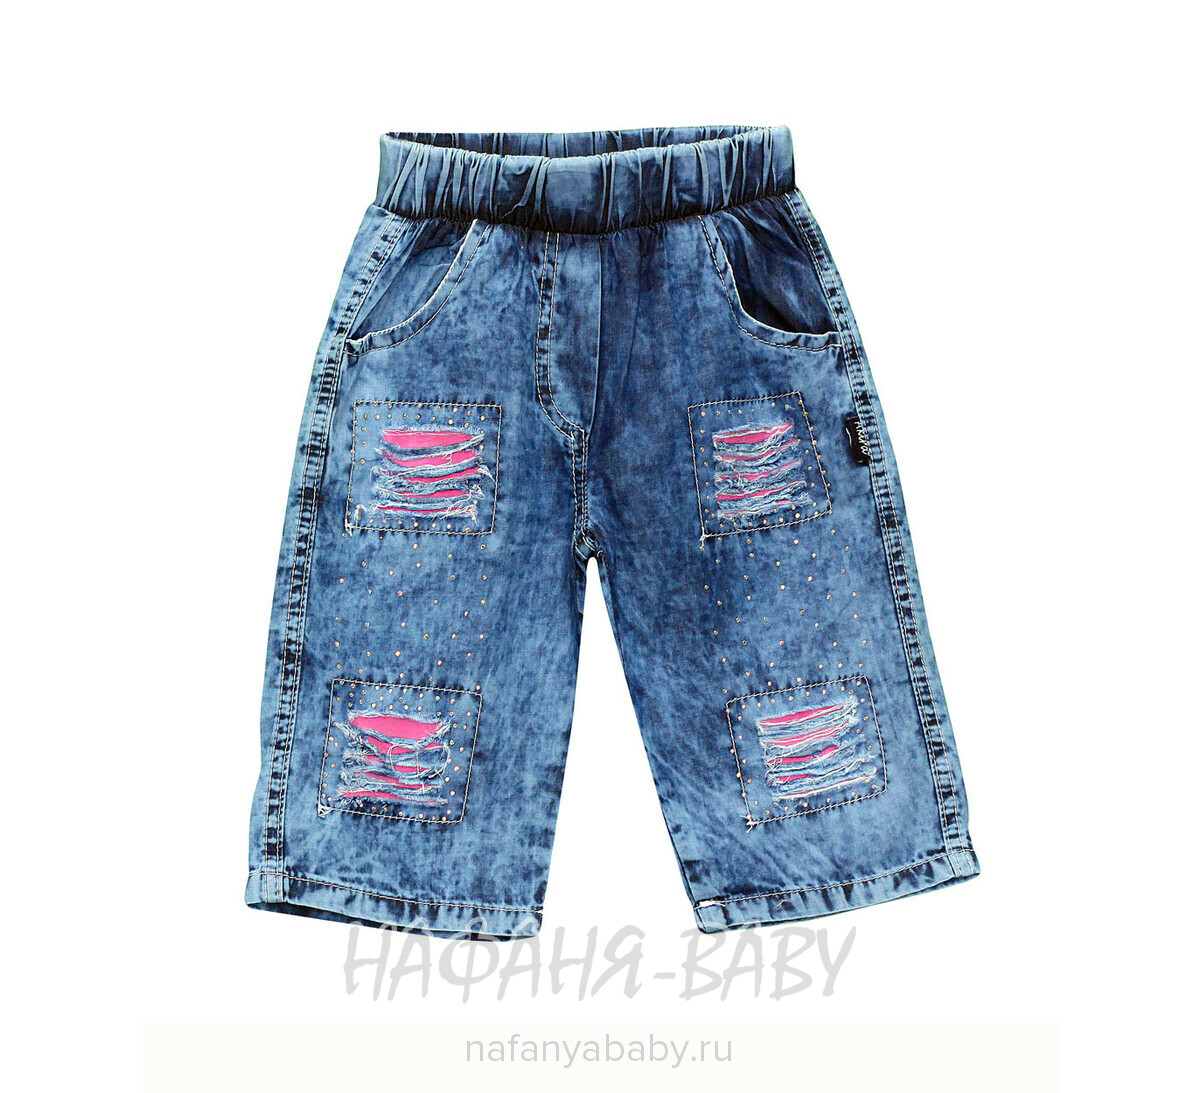 Детские джинсовые шорты AKIRA, купить в интернет магазине Нафаня. арт: 2139.